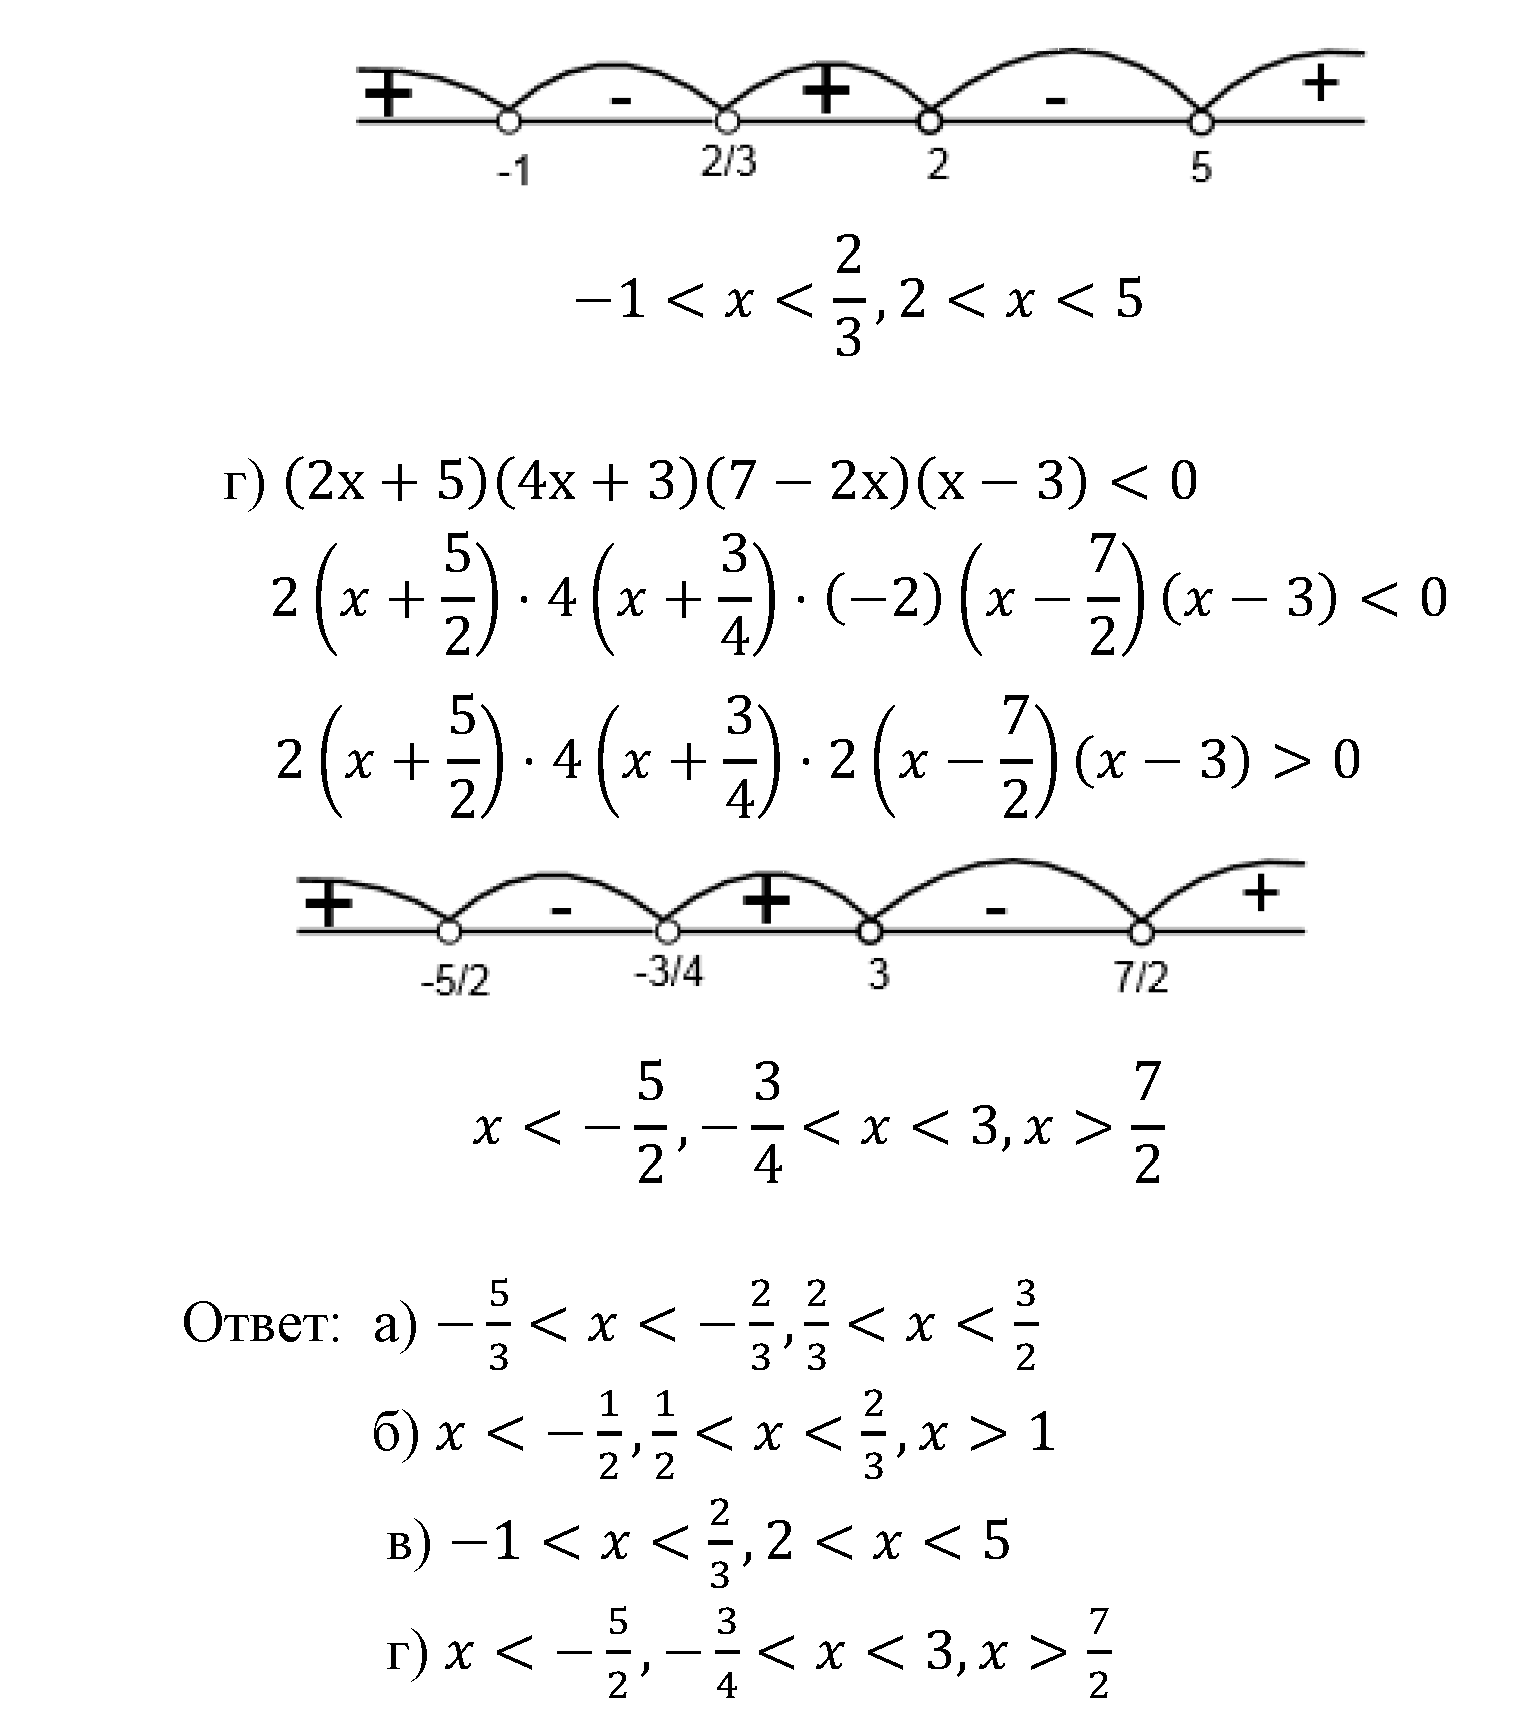 задача №2.15 алгебра 9 класс Мордкович